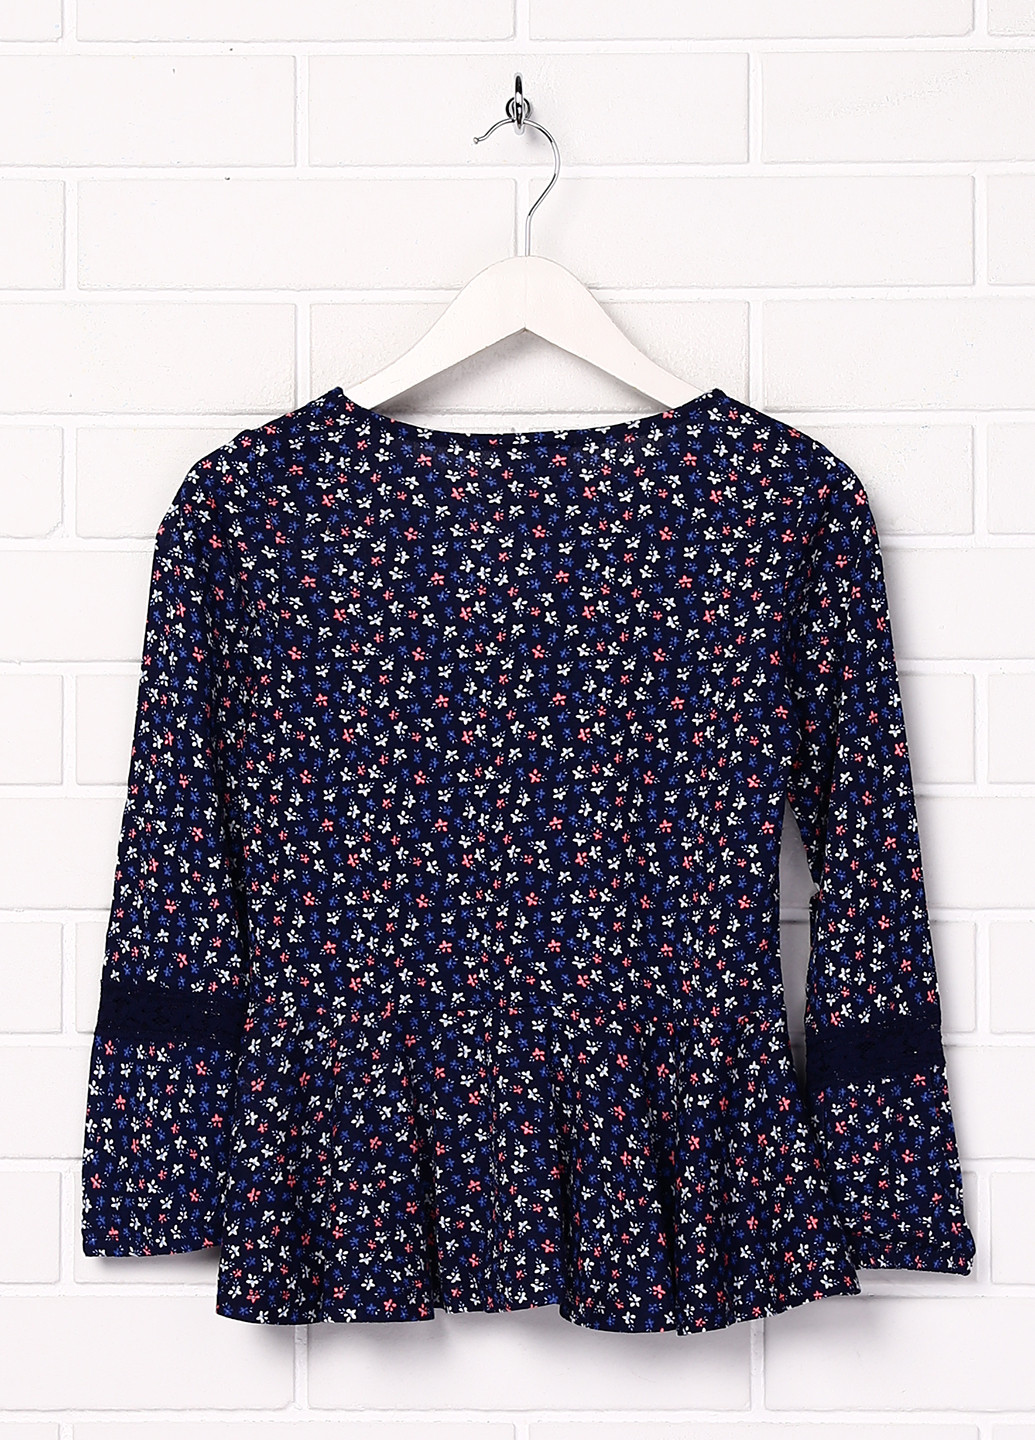 Комбинированная цветочной расцветки блузка с длинным рукавом Topolino летняя